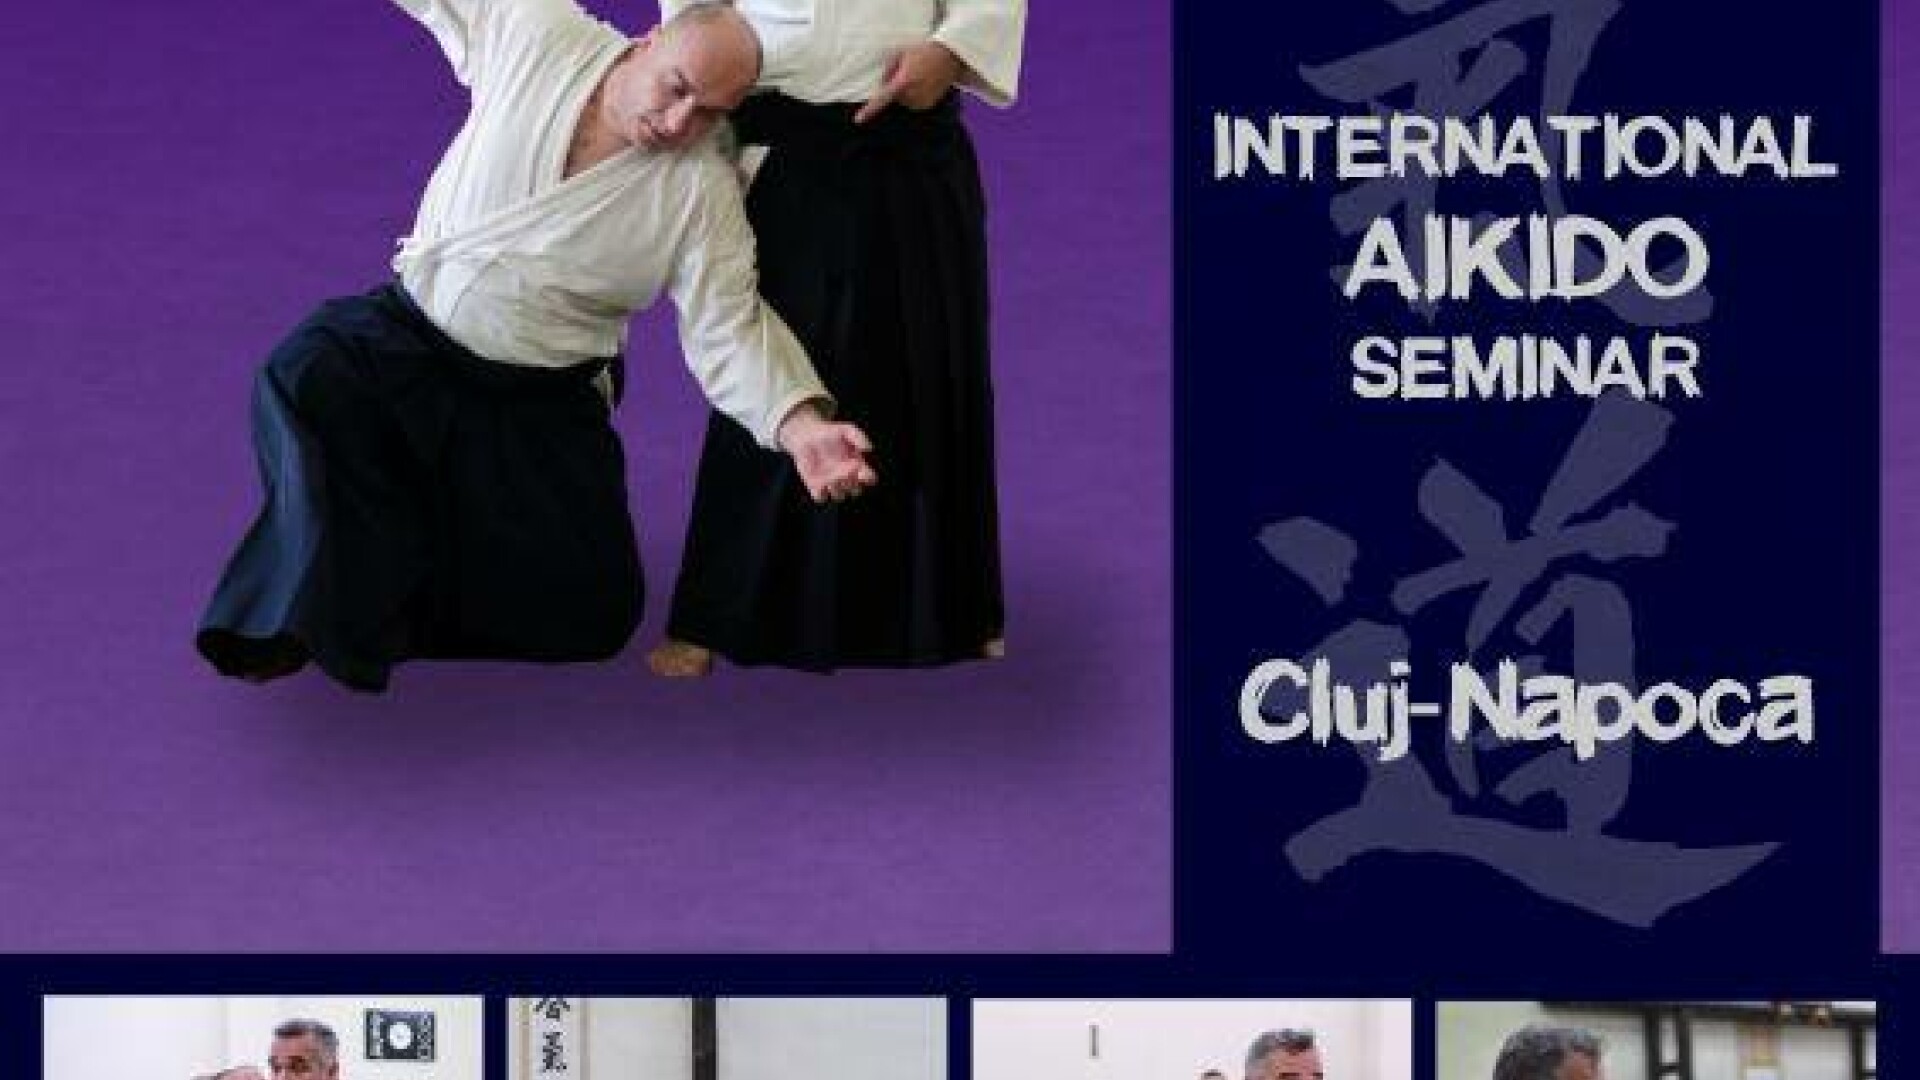 Maestrul de aikido Wilko Vriesman Shihan 6 dan aikido aikikai, vine la Cluj